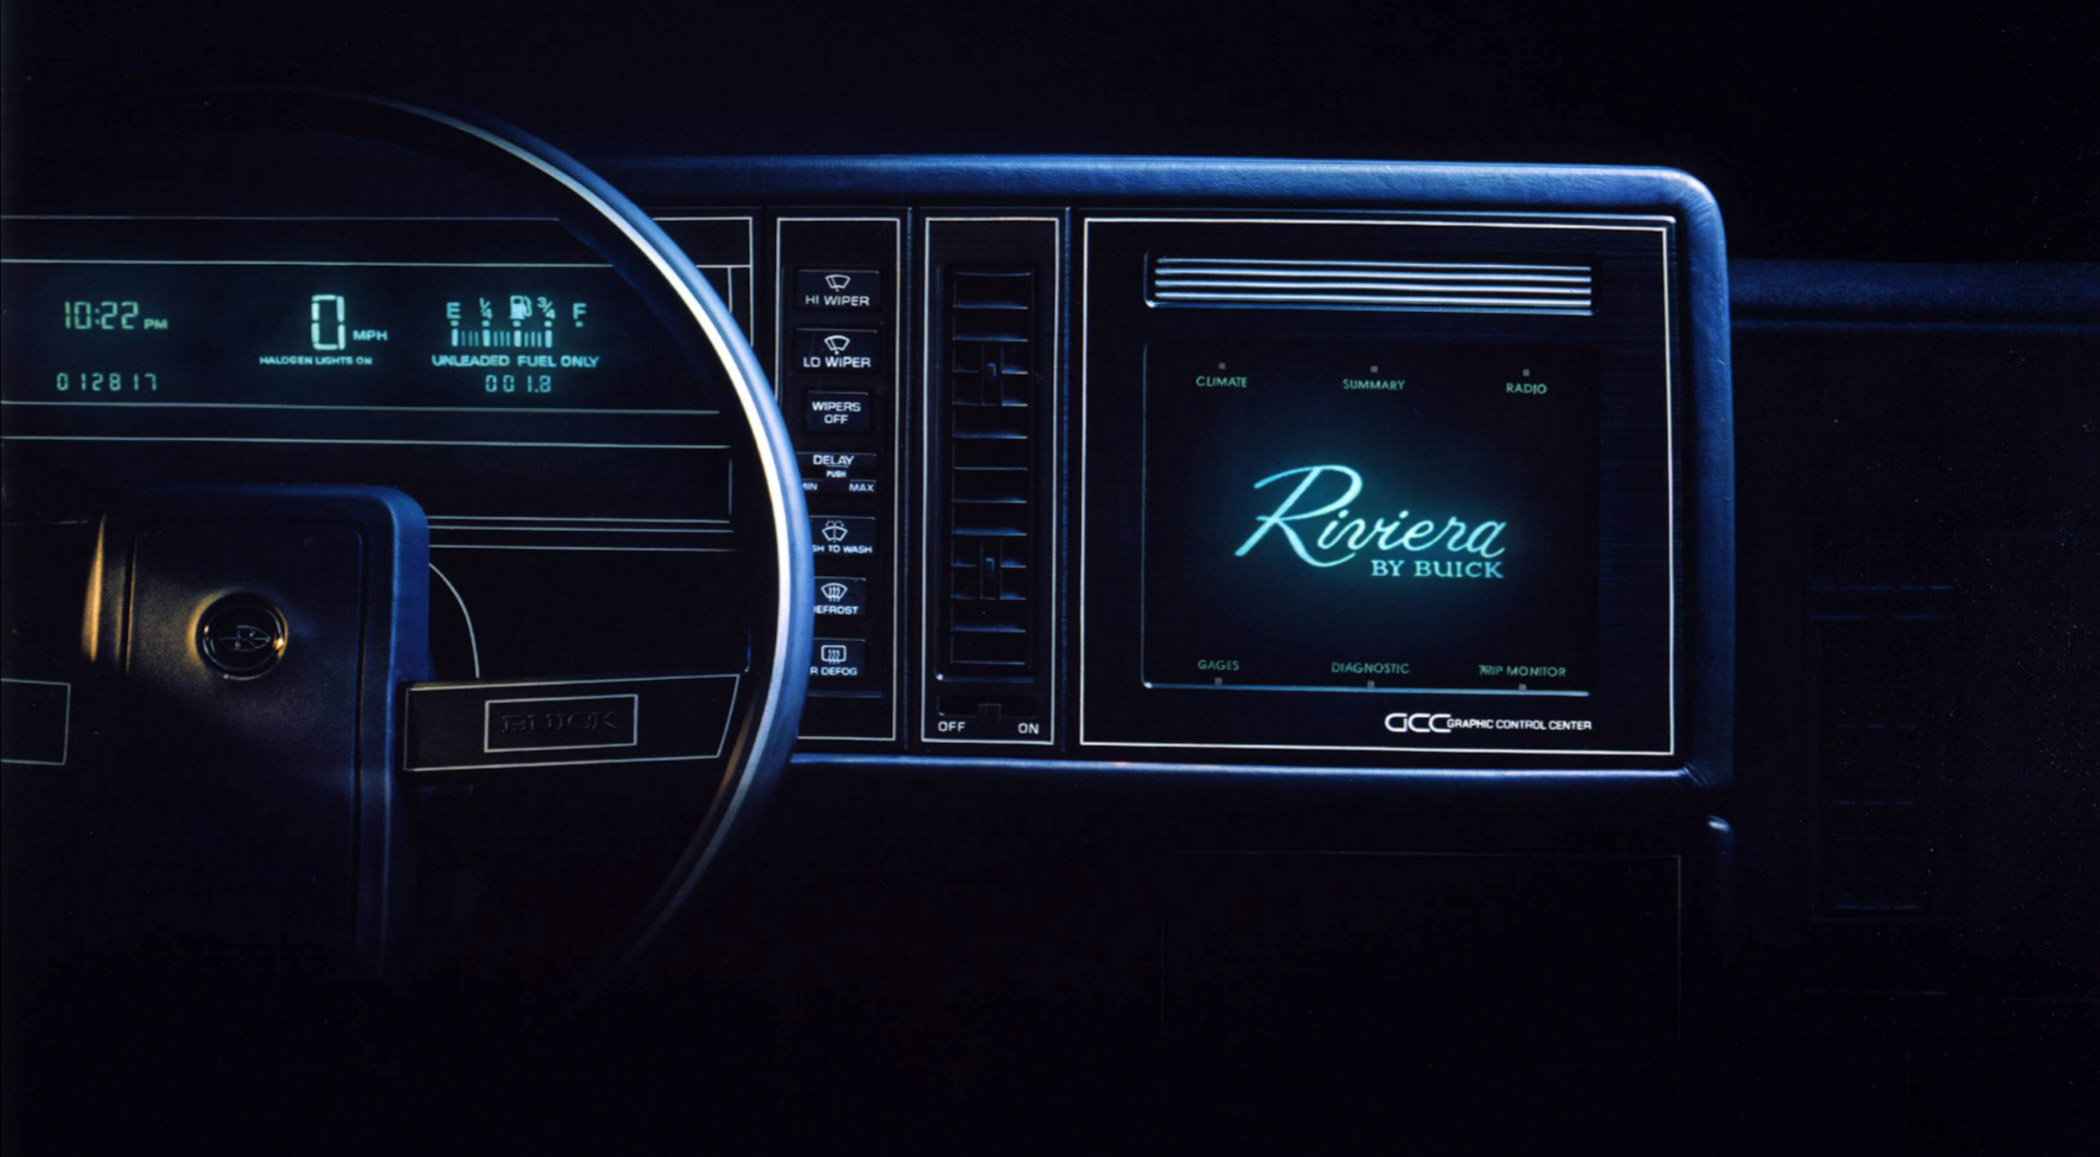 Buick Riviera (1986) // Pantalla táctil